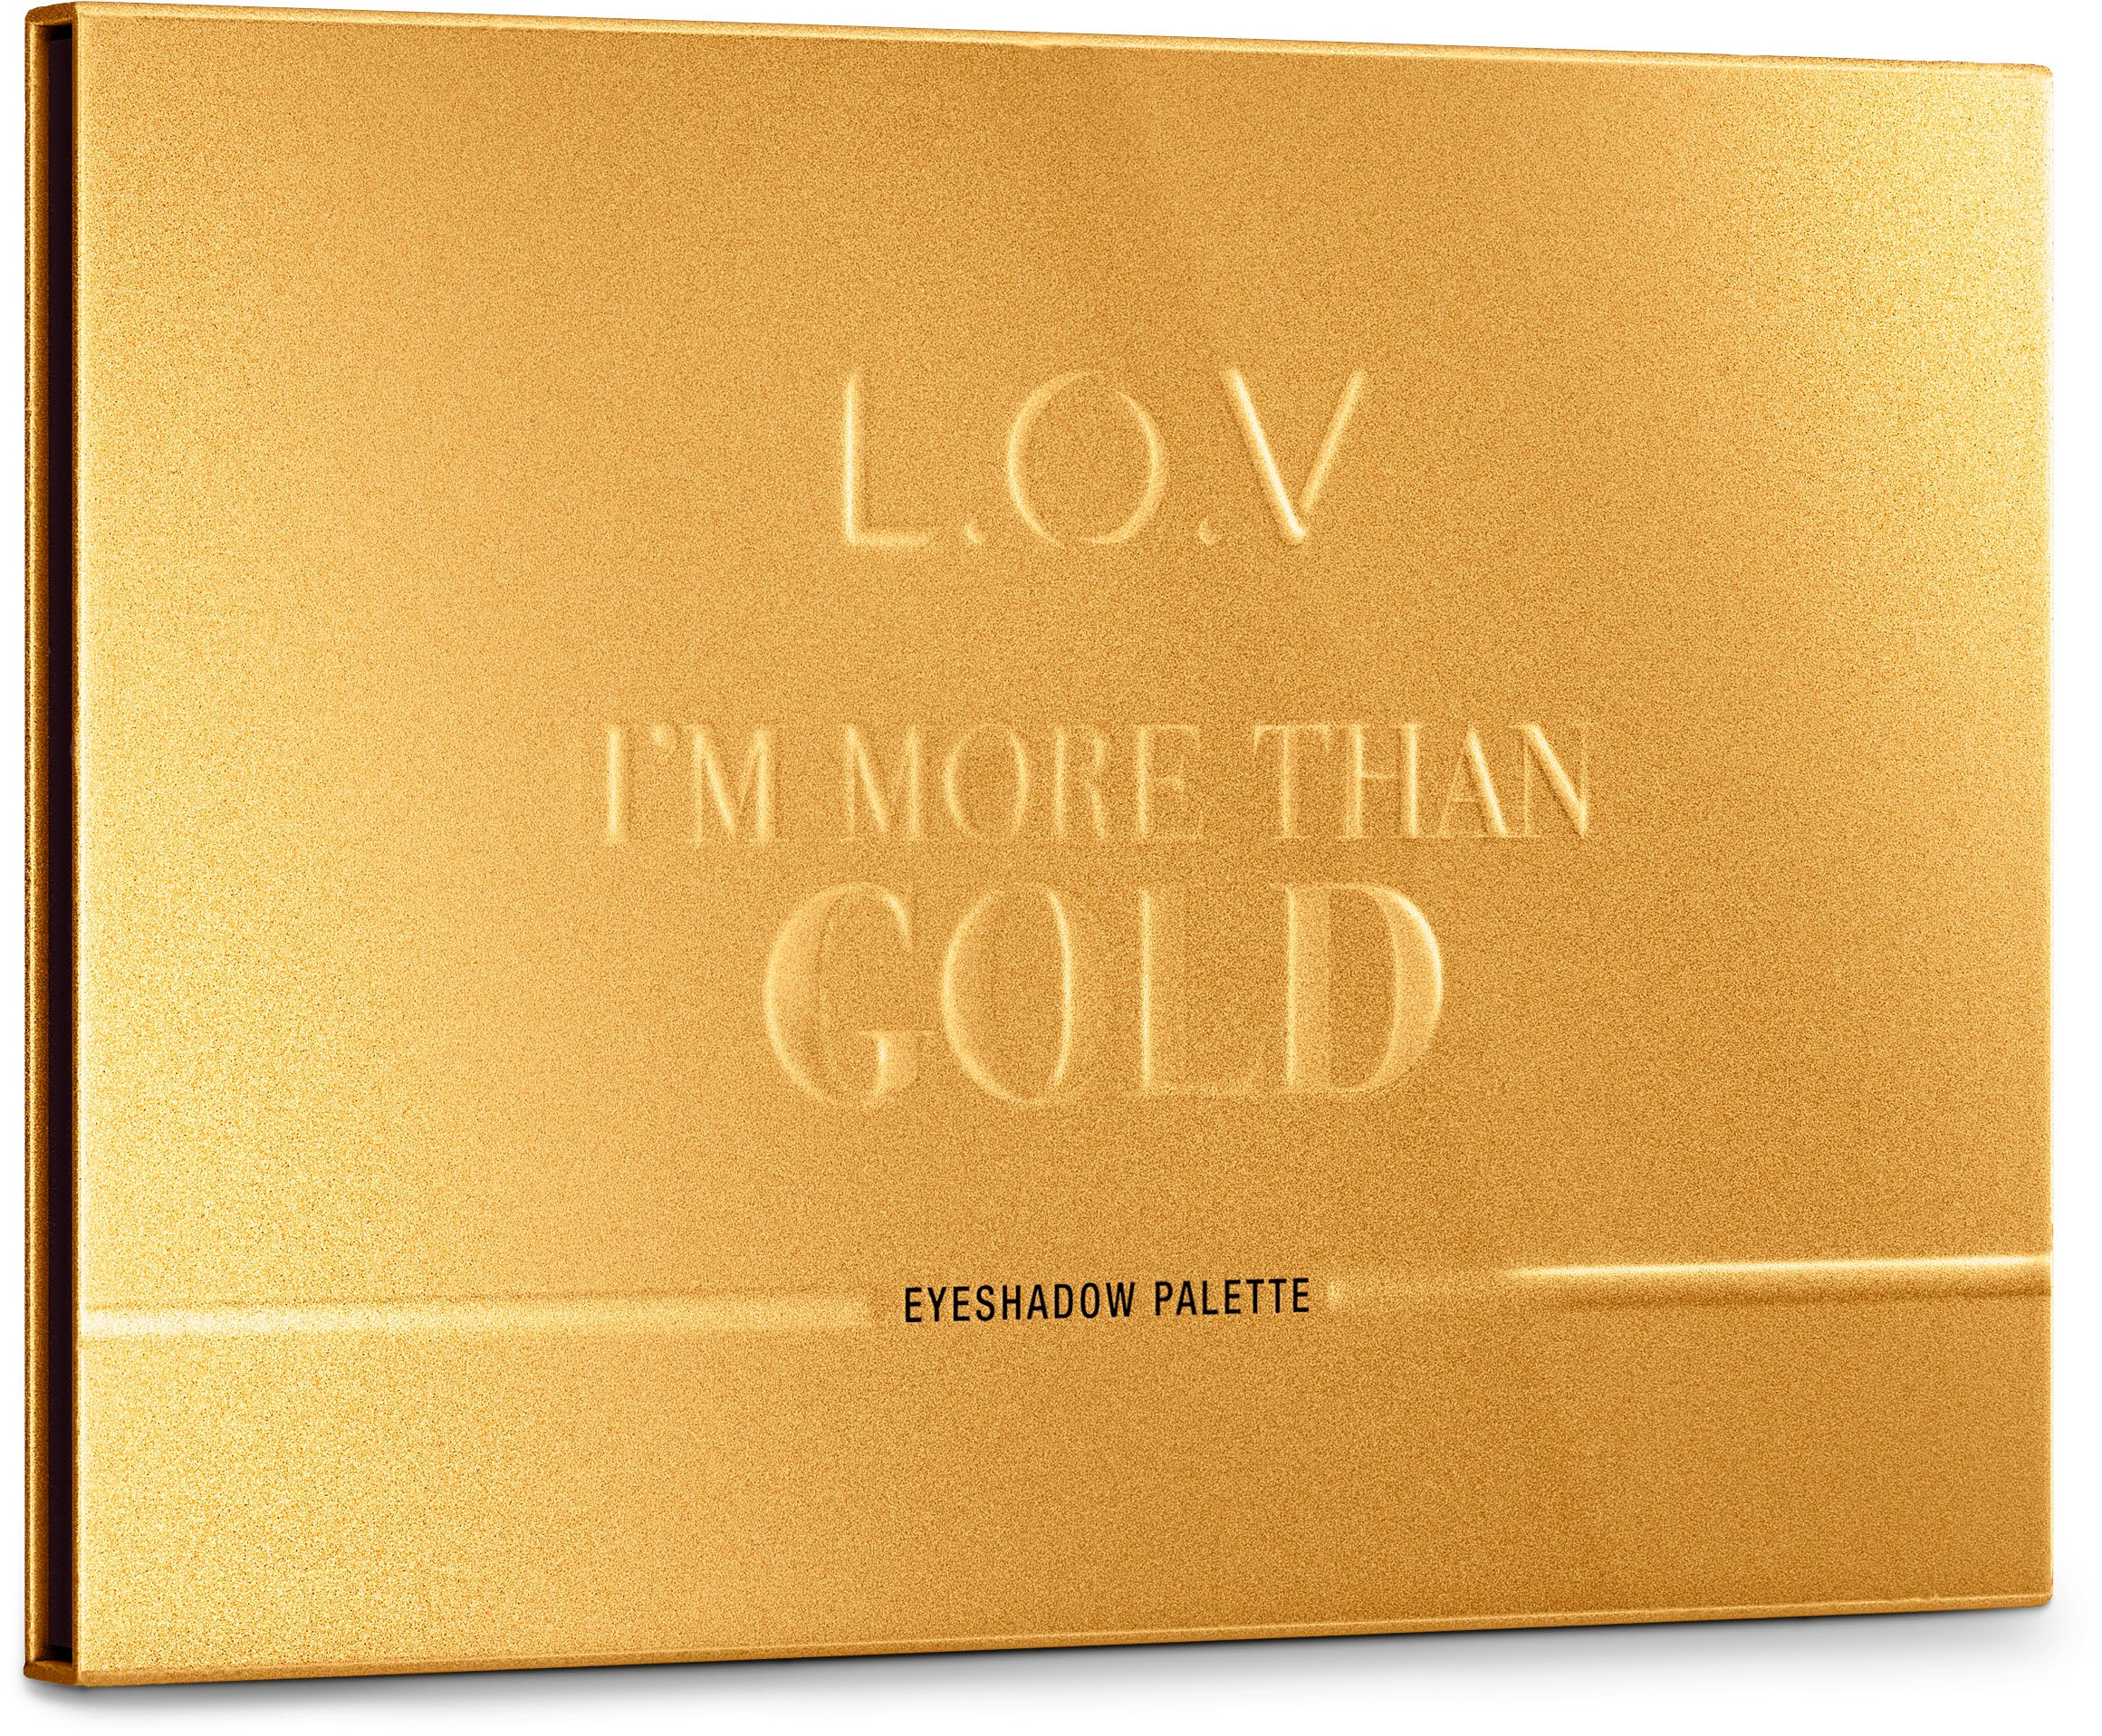 L.O.V Lidschatten-Palette »I´M MORE THAN GOLD« bestellen | BAUR